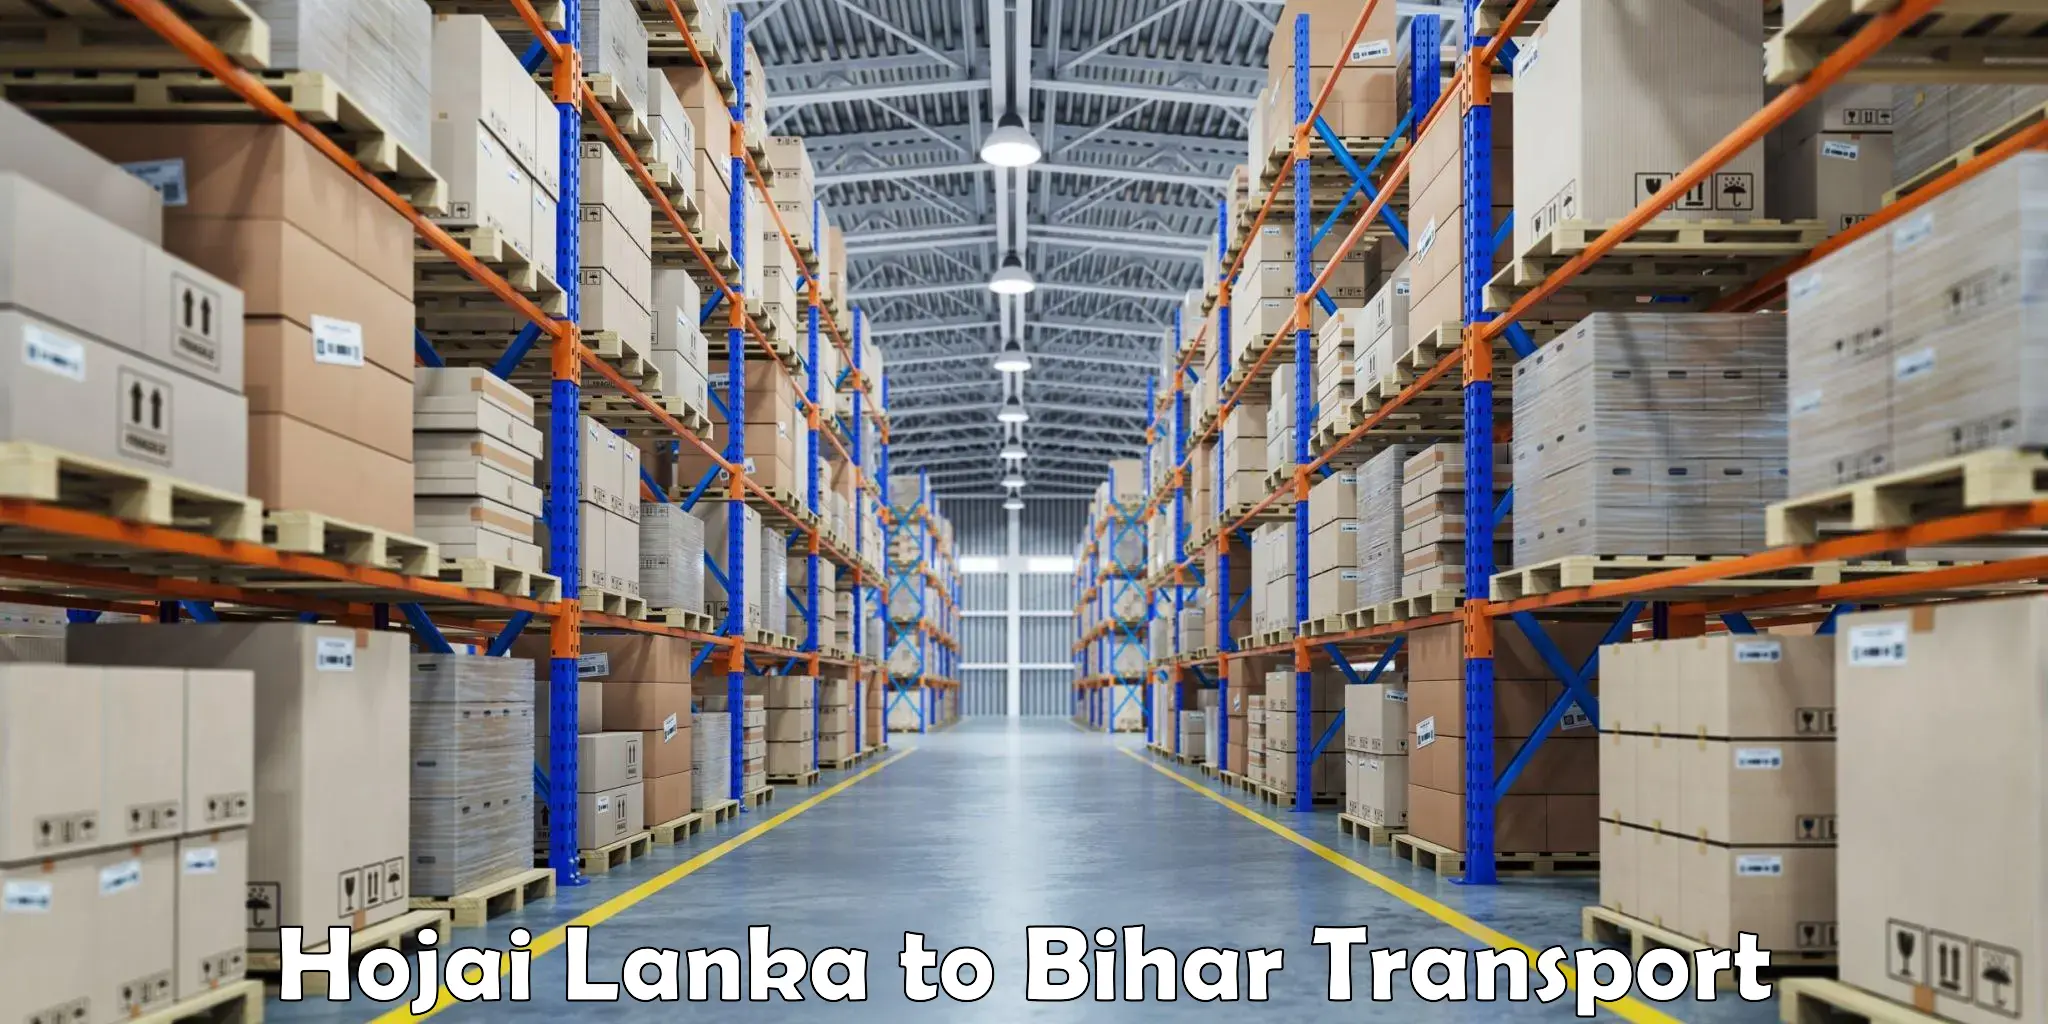 International cargo transportation services Hojai Lanka to Phulparas